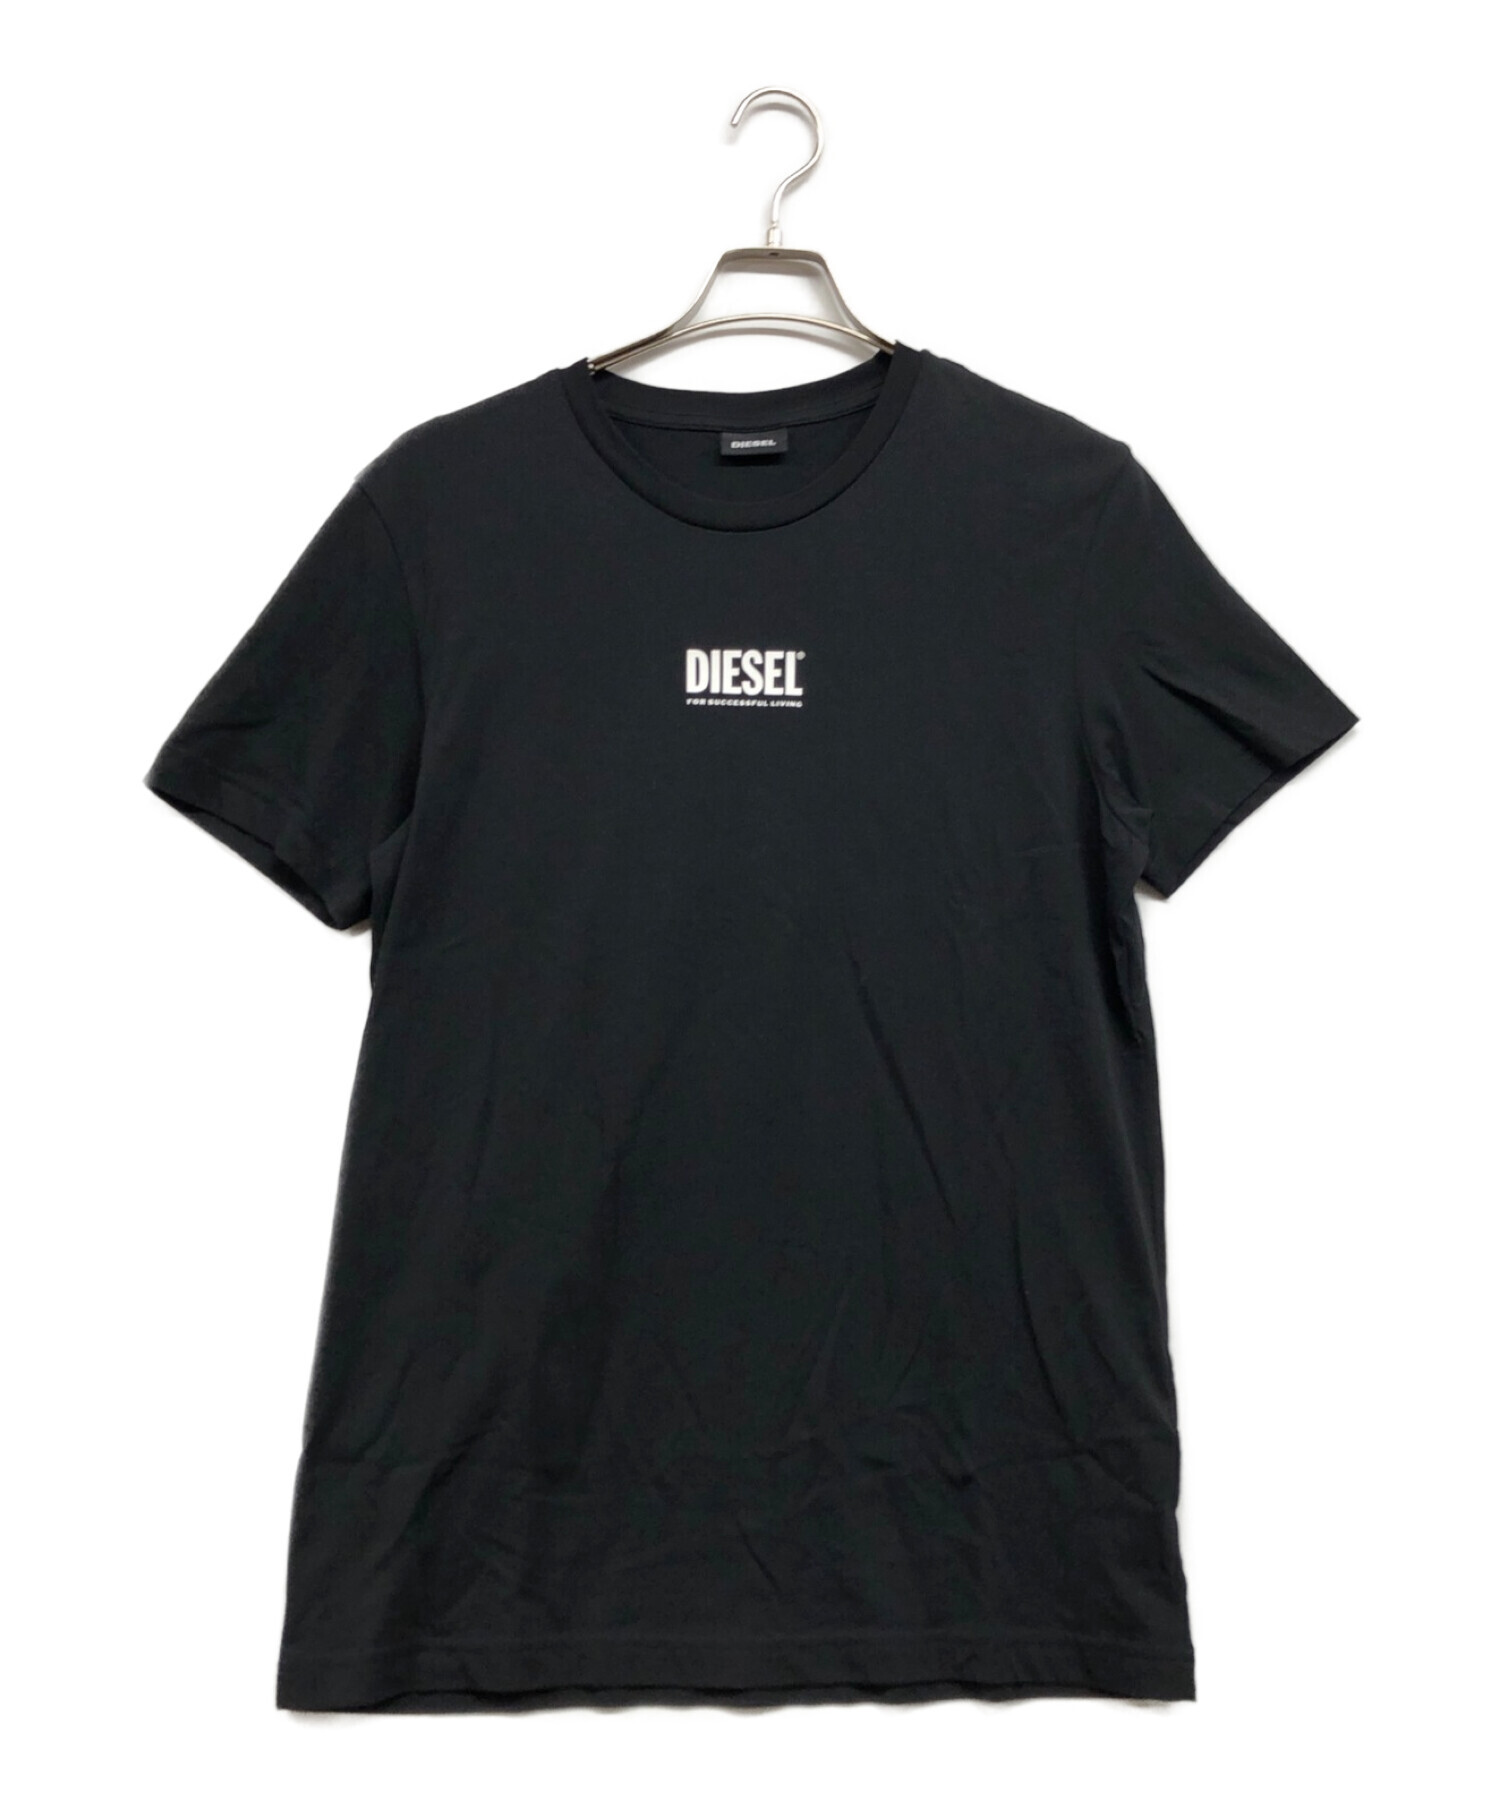 DIESEL (ディーゼル) フロントロゴtシャツ ブラック サイズ:L